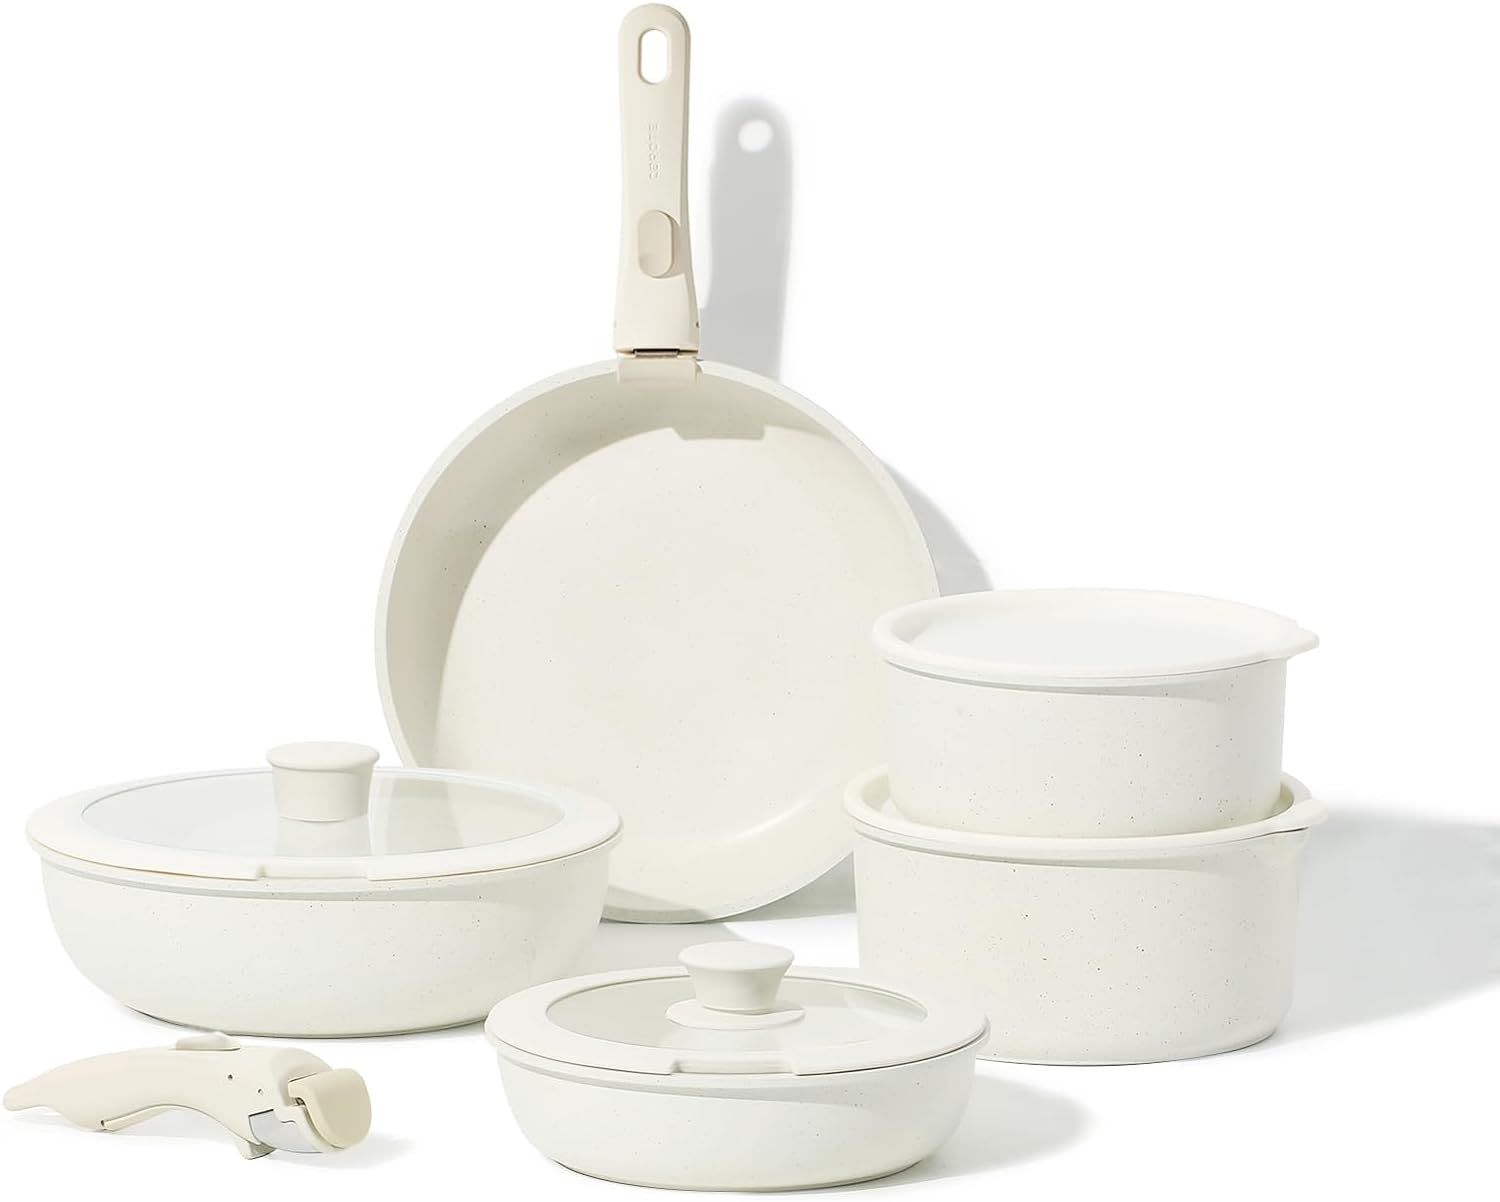 CAROTE 11pcs Pots and Pans Set, Nonstick Cookware Sets Detachable Handle, Induction Kitchen Cookw... | Amazon (US)